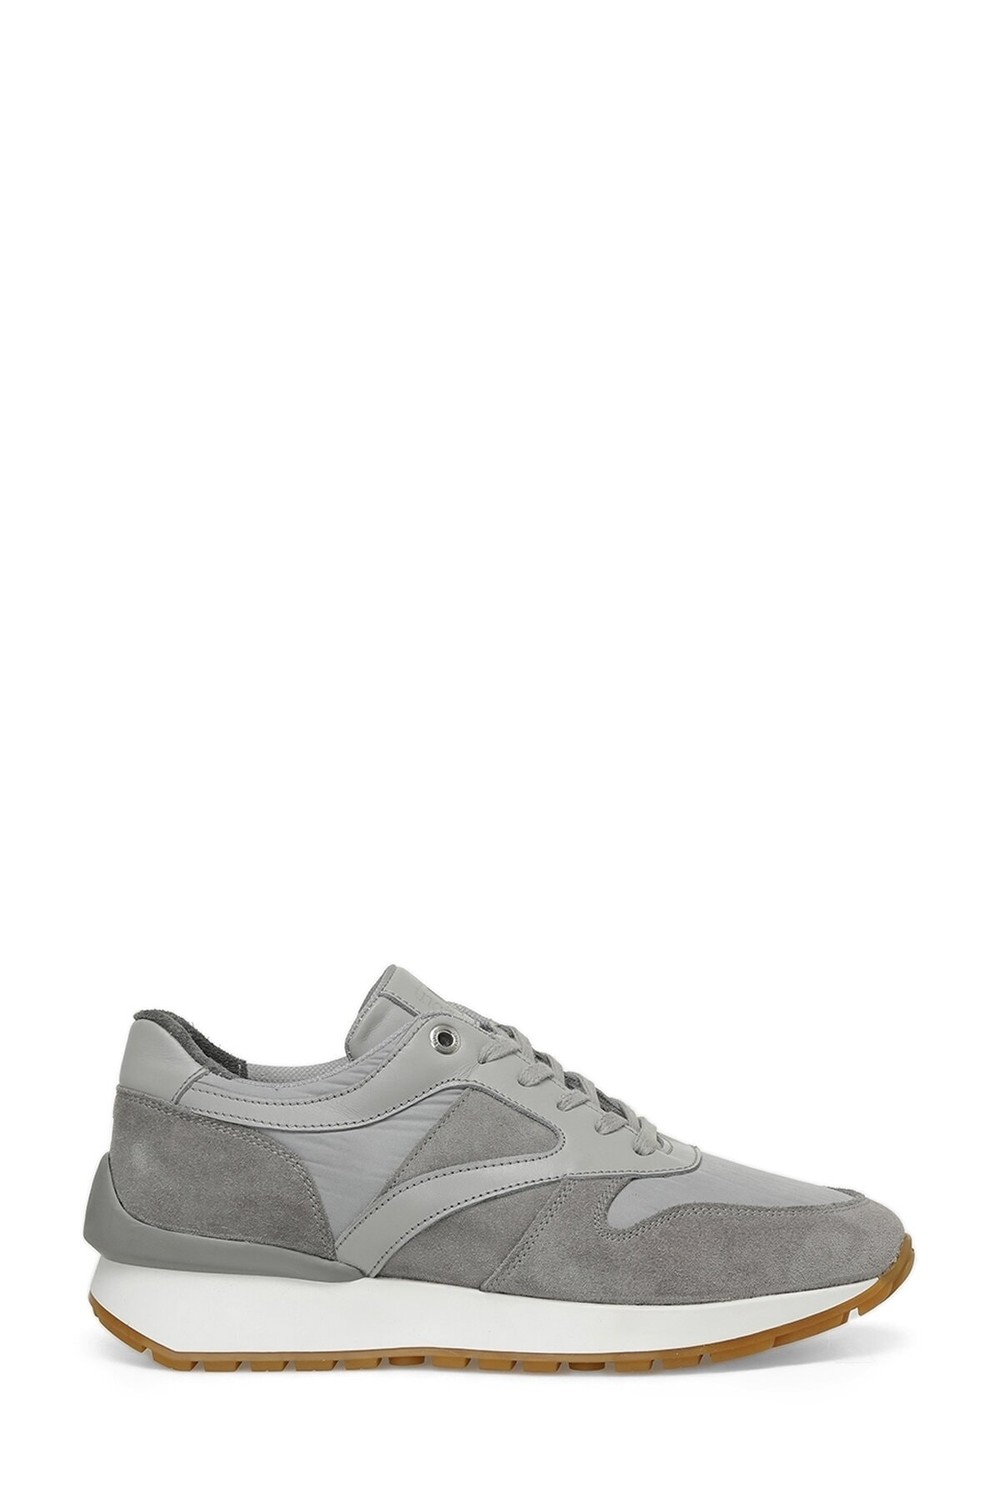 İnci Divera 3fx Gray Men's Sports Shoes